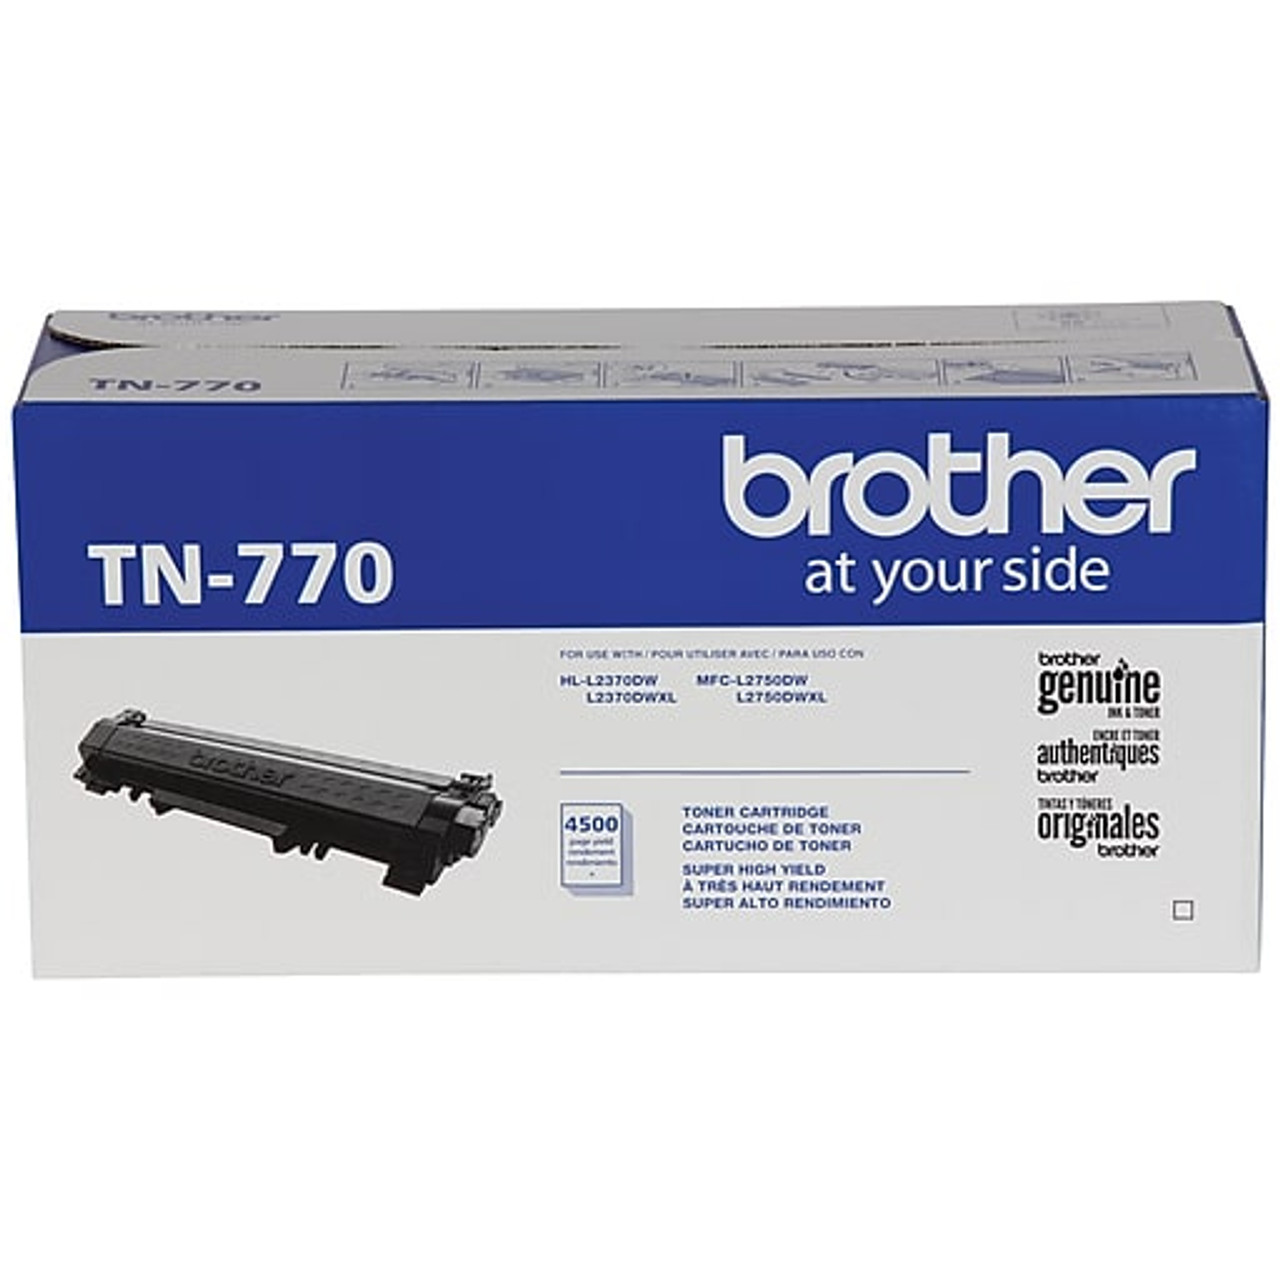 ✓ Brother Pack Toner TN-241 (BK/C/M/Y) couleur pack en stock